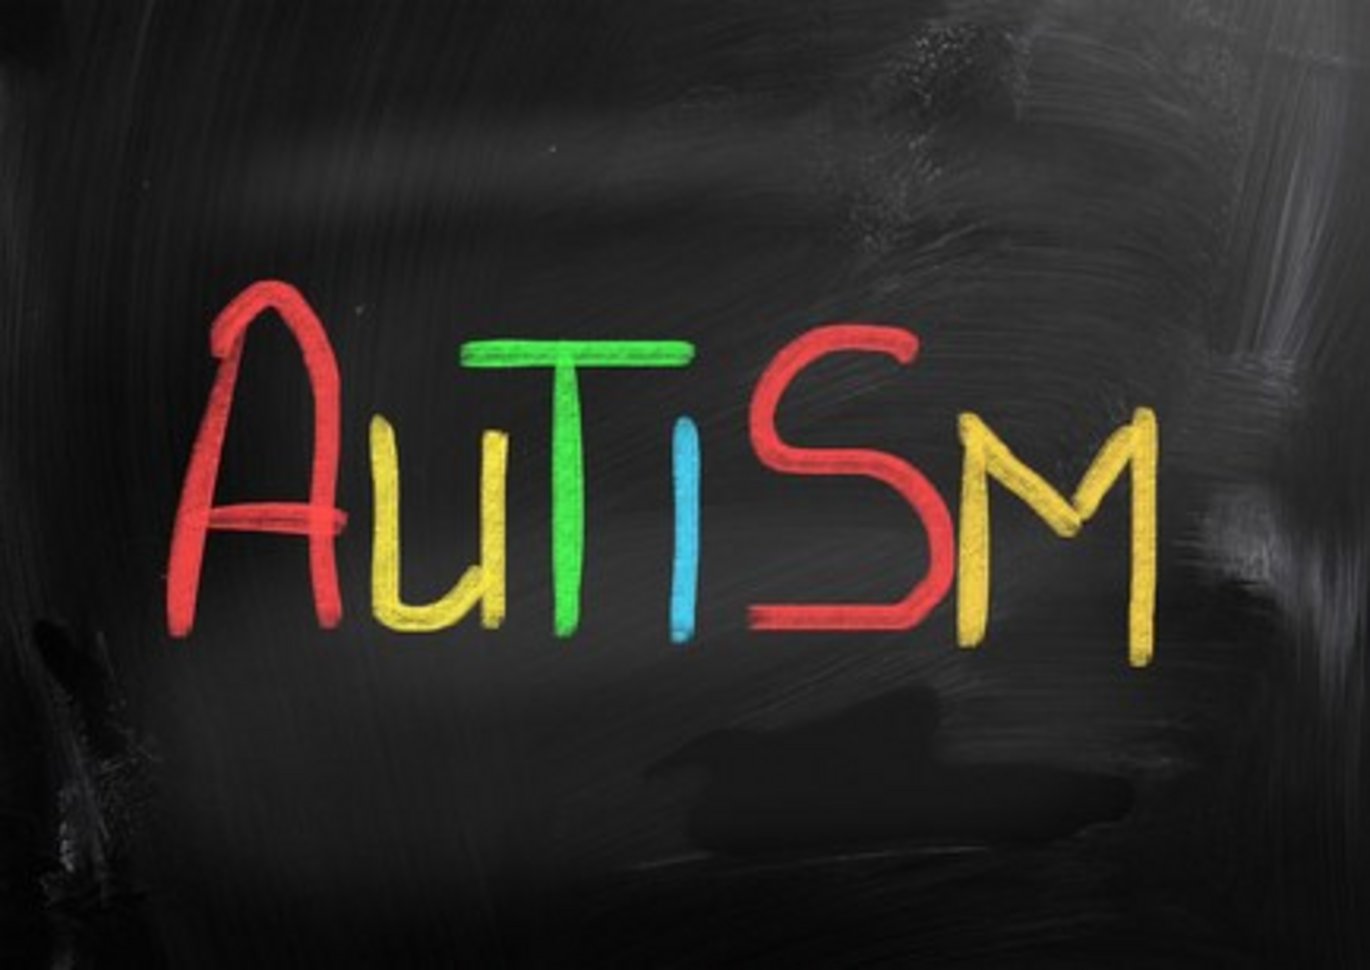 Ny undersøgelse viser, at man næppe kan tale om en autisme-epidemi, selv om både Danmark og andre lande p.t. oplever en voldsom stigning i antal tilfælde af autisme spektrum forstyrrelser.